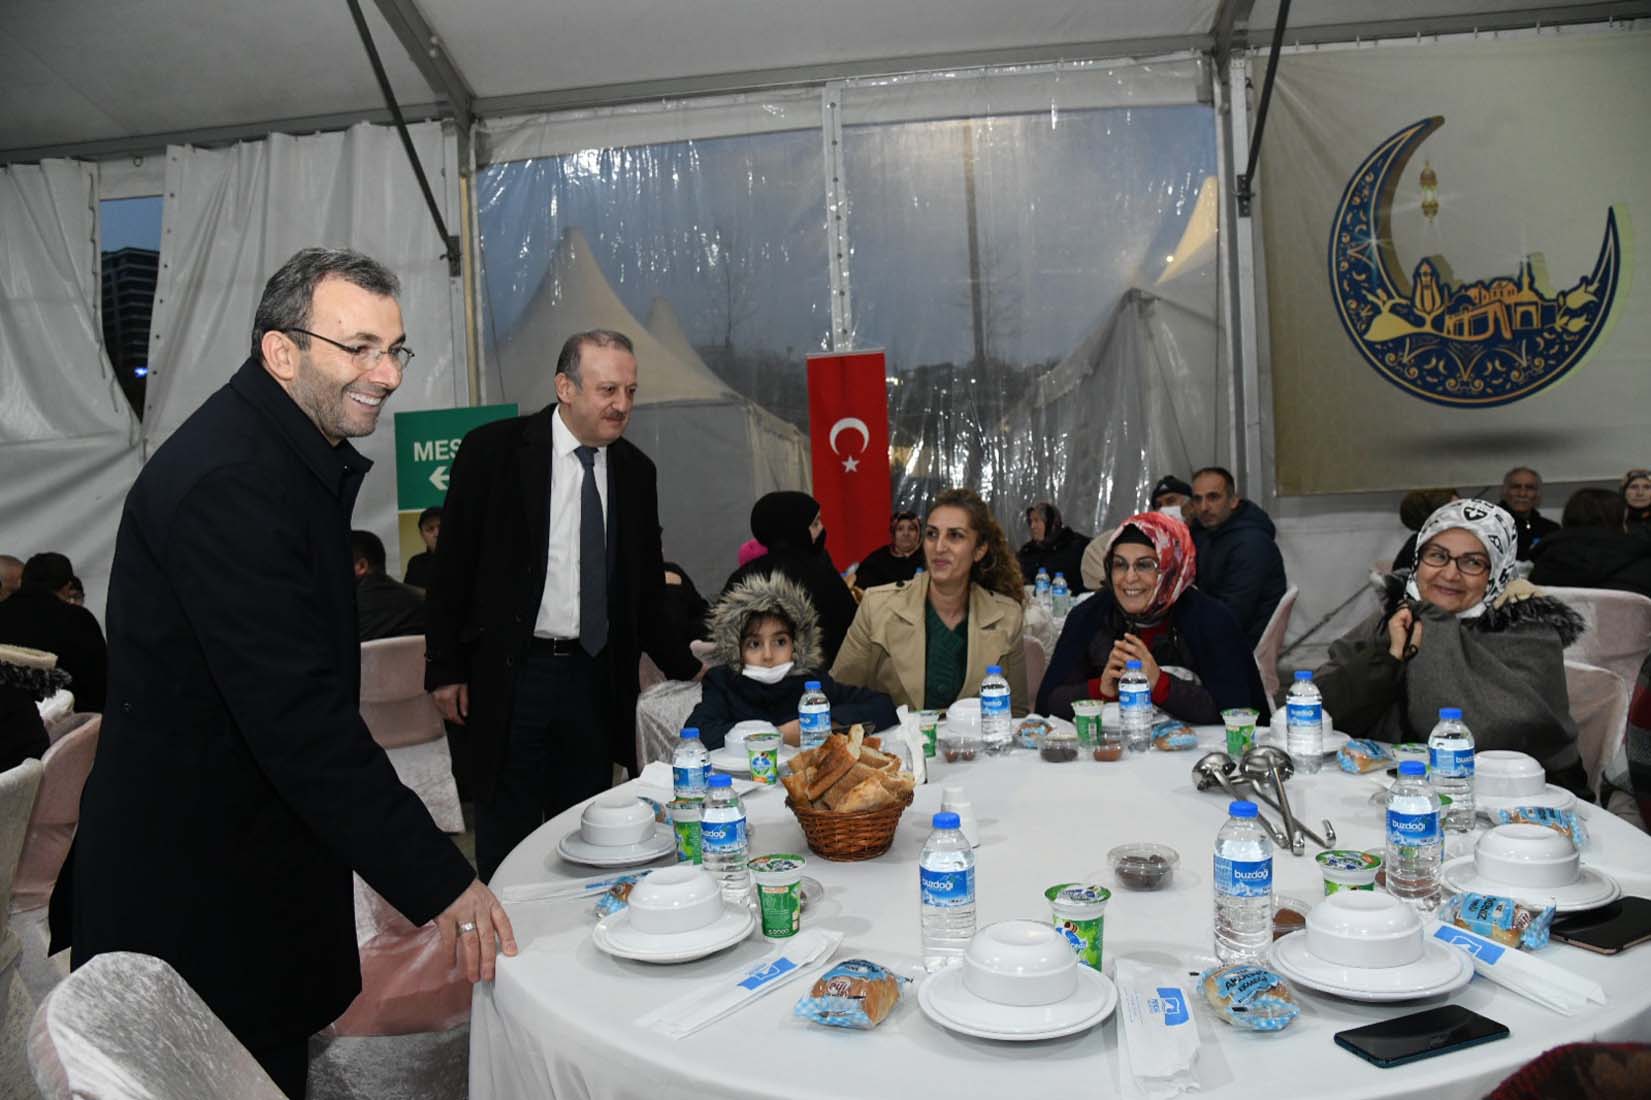 Şehit aileleri ve gaziler aynı sofrada buluştu: Başkanı Ahmet Cin "Sizler bize bu milletin emanetisiniz"